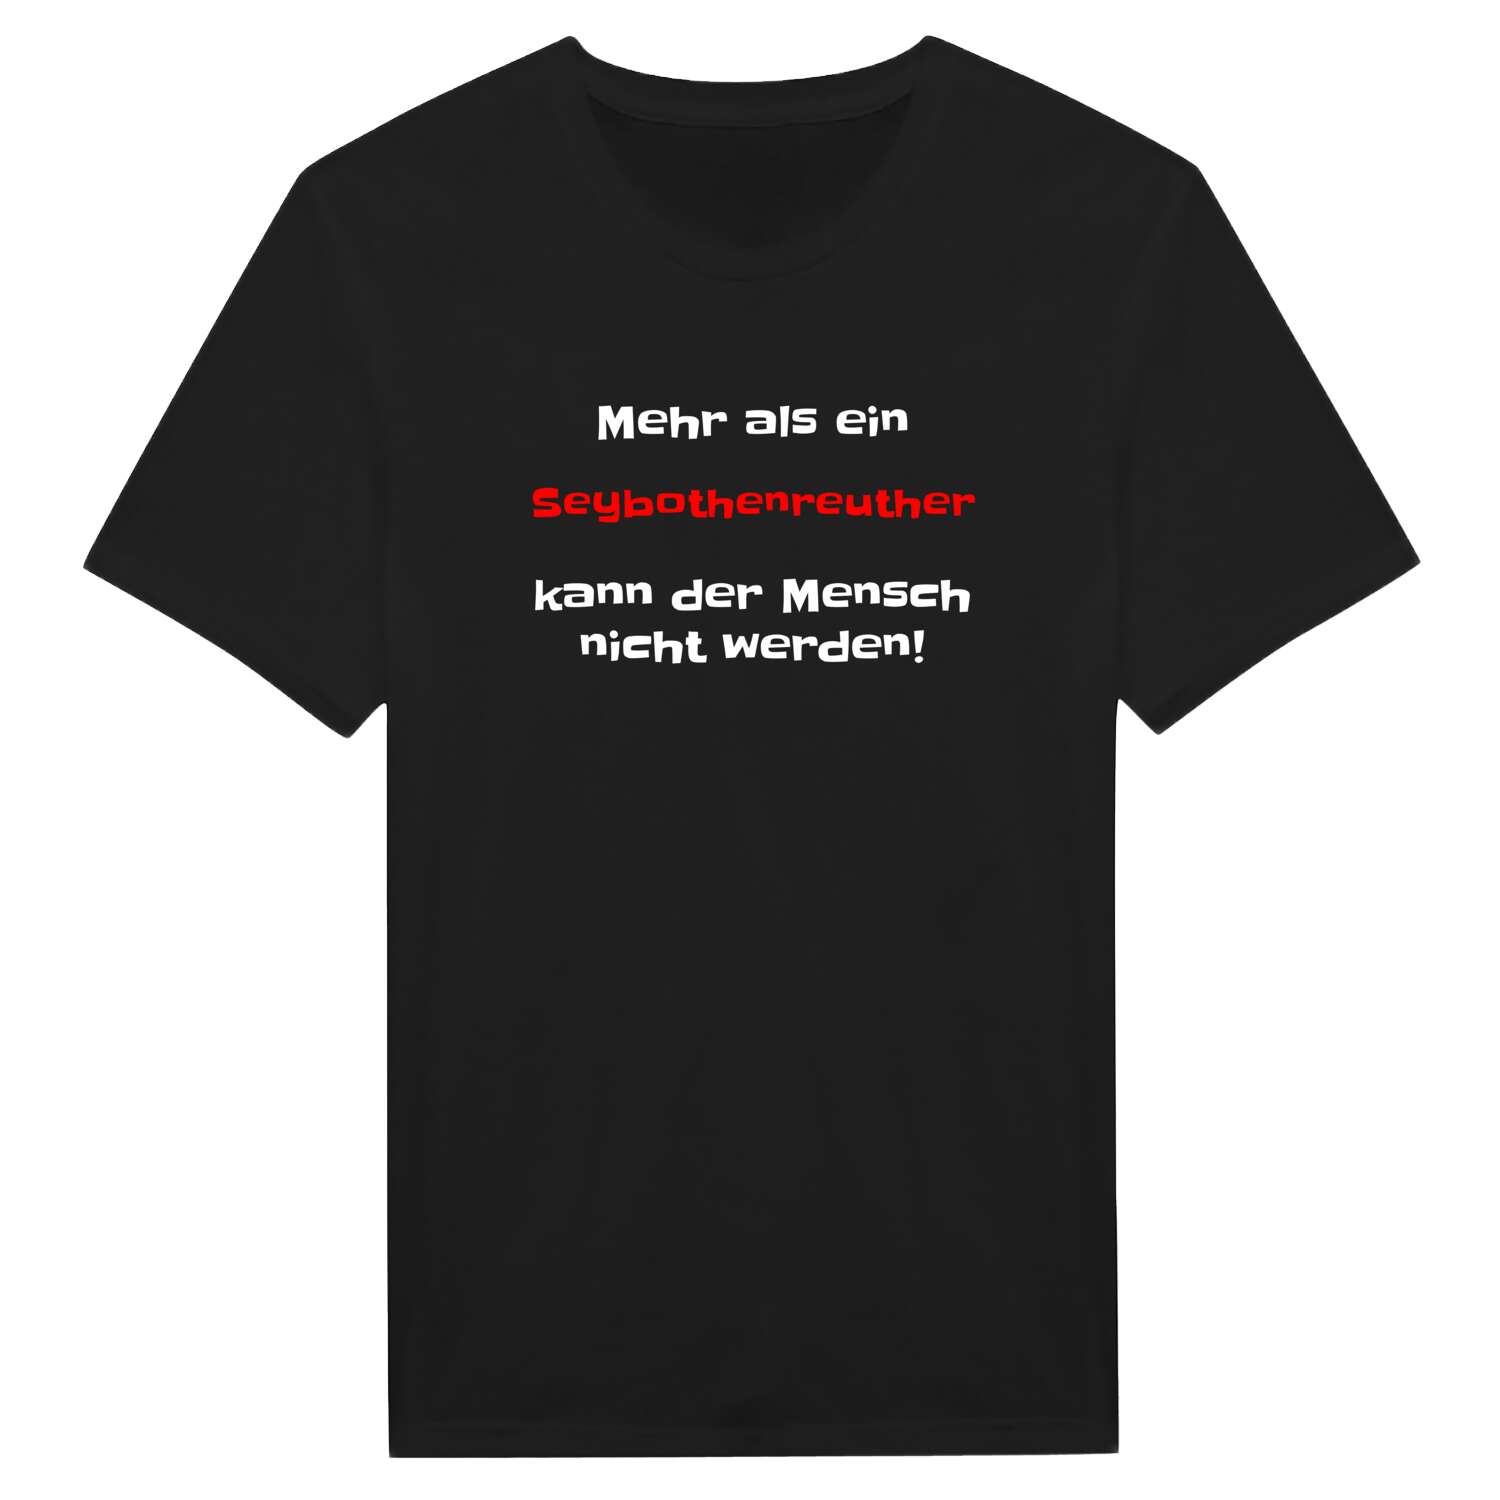 Seybothenreuth T-Shirt »Mehr als ein«